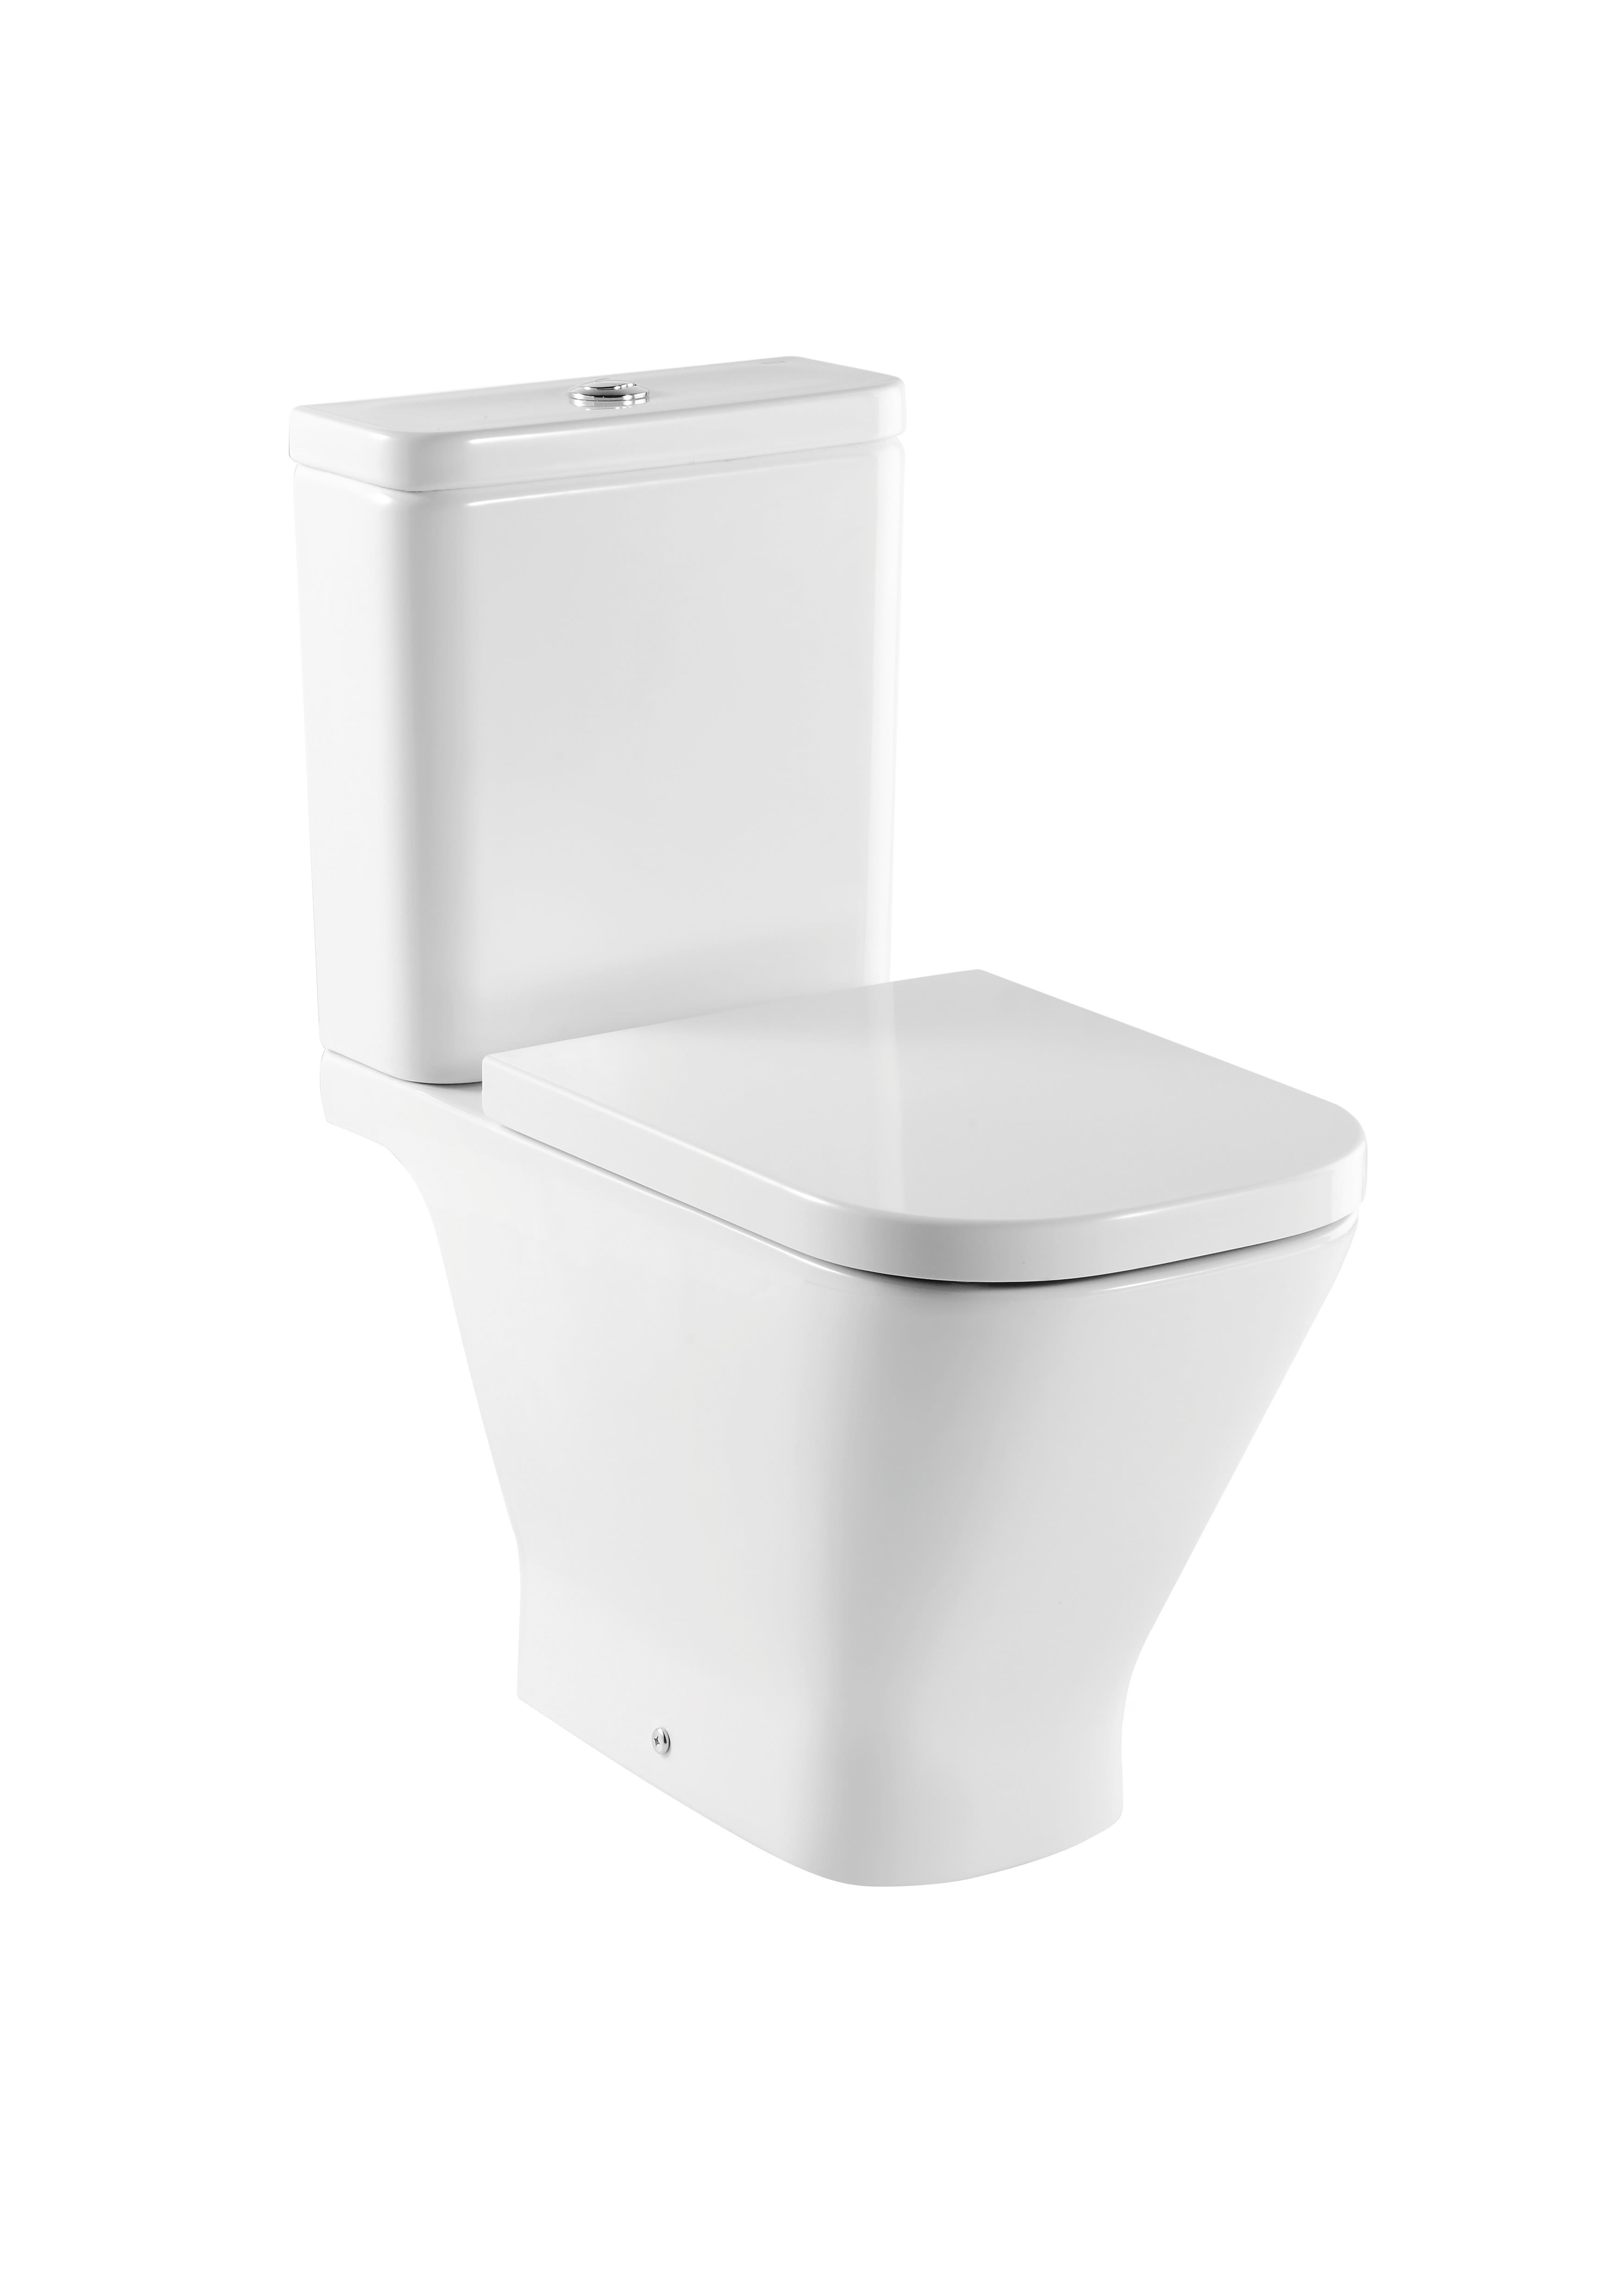 座厕水箱 米白色 盖普致选 A34A47500C Roca